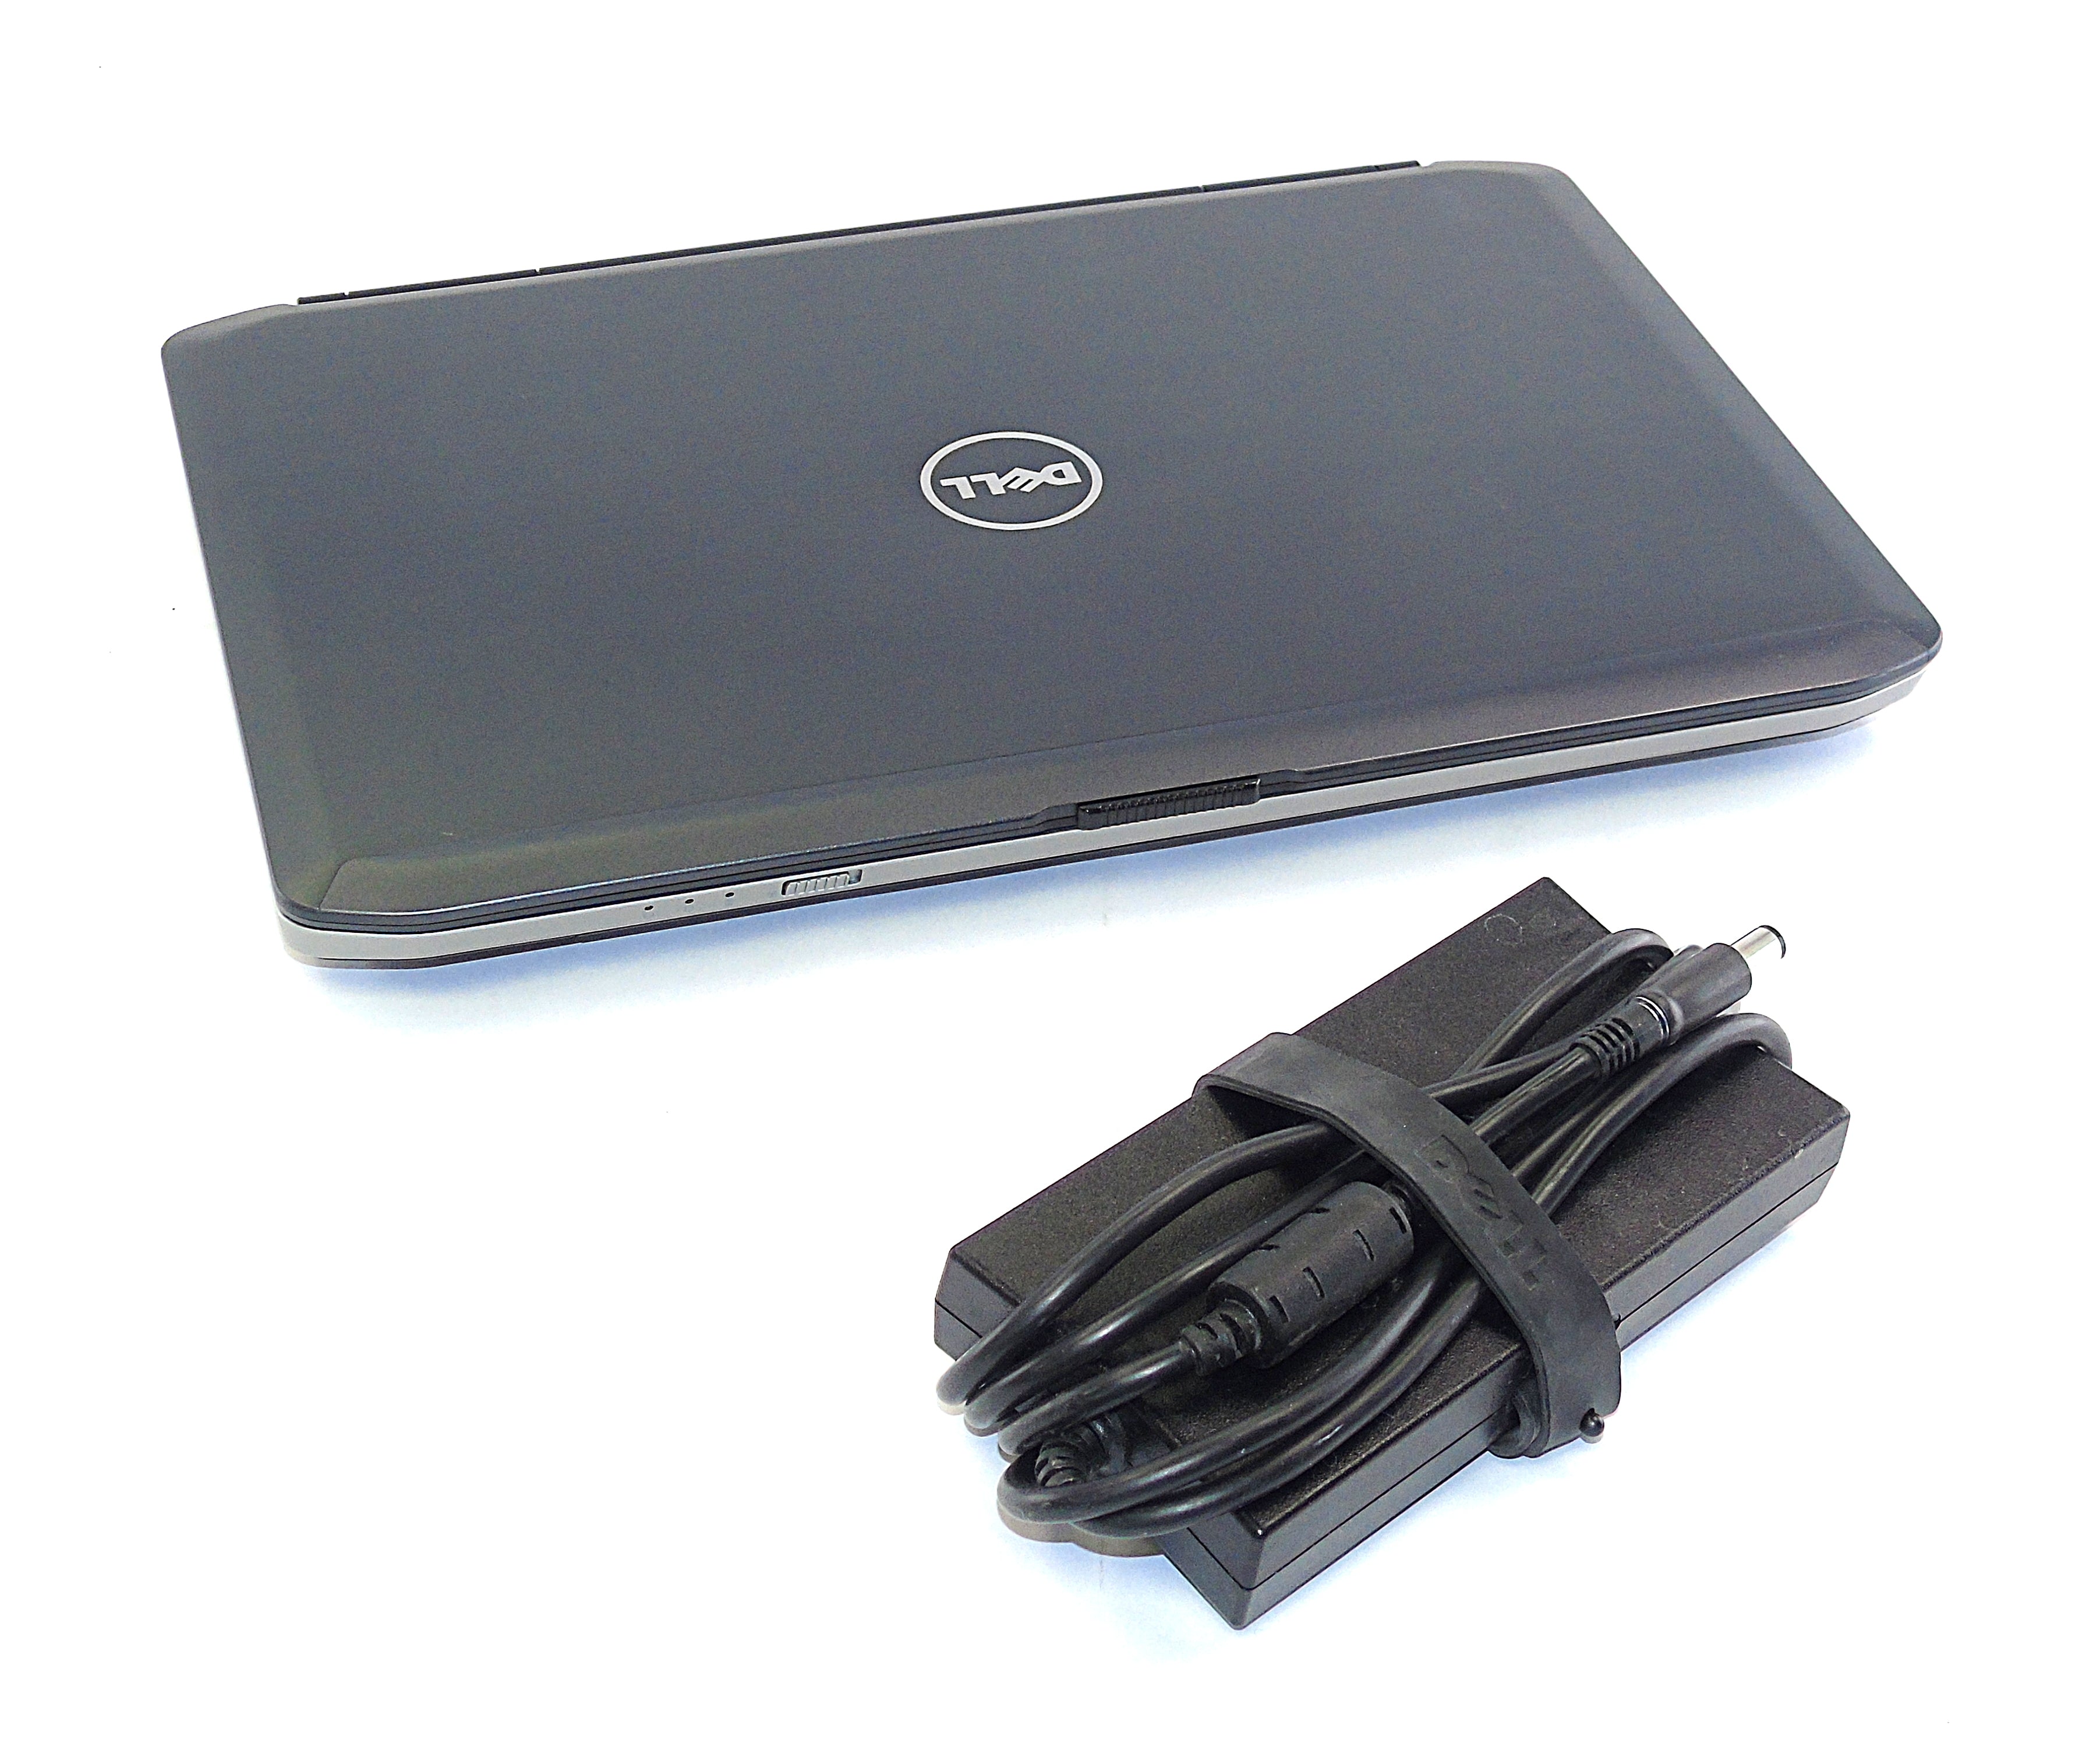 Dell Latitude E5430 Laptop, 14" i5 3rd Gen, 8GB RAM, 256GB SSD